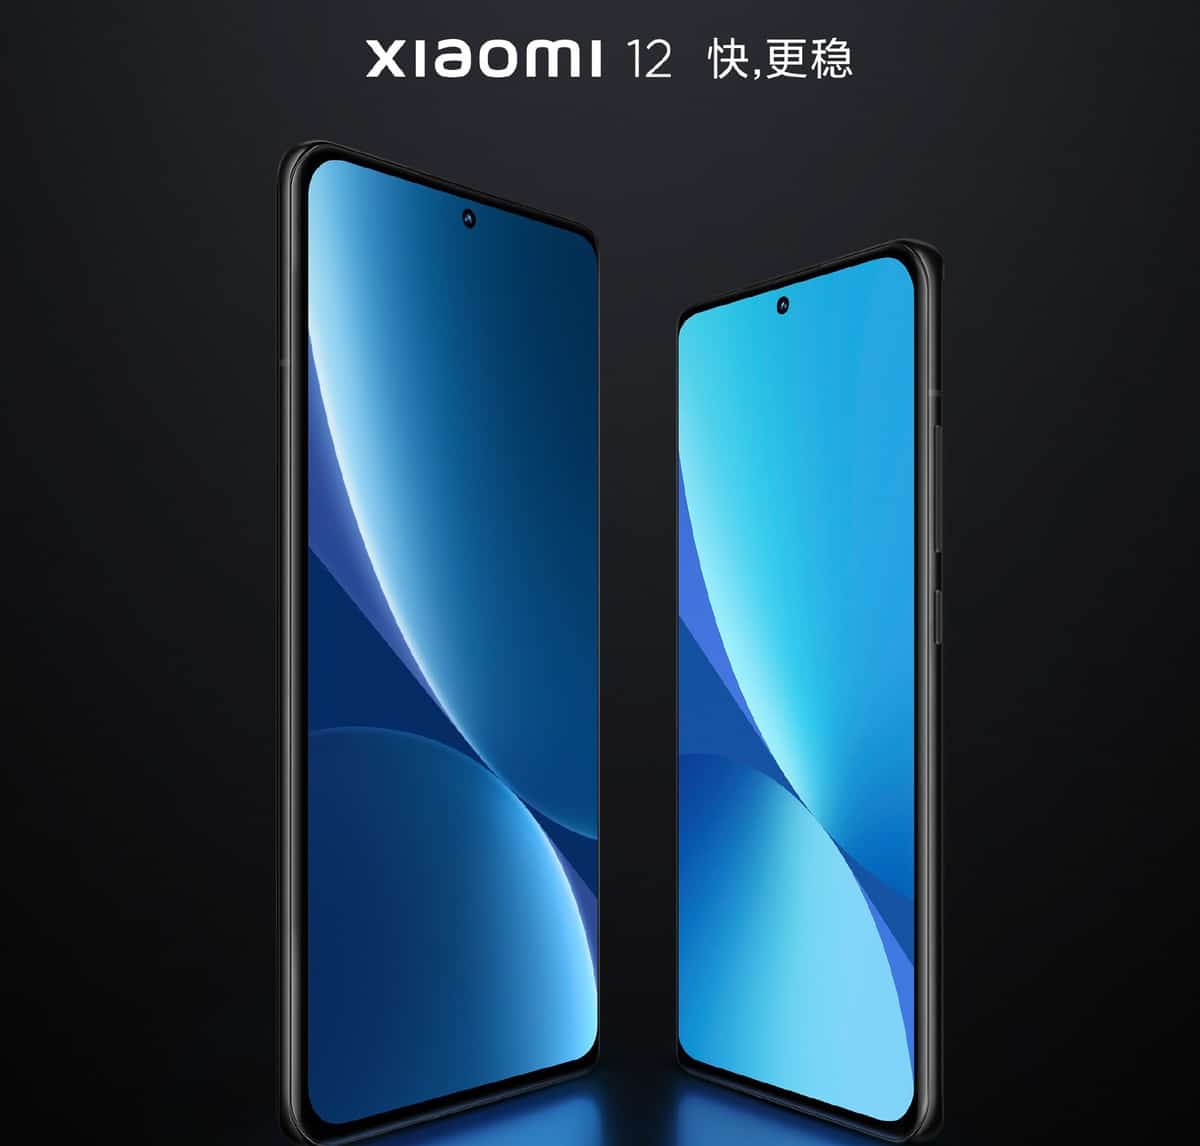 Xiaomi 12 com processador Snapdragon 8 Gen 1 será lançado na China no dia 28